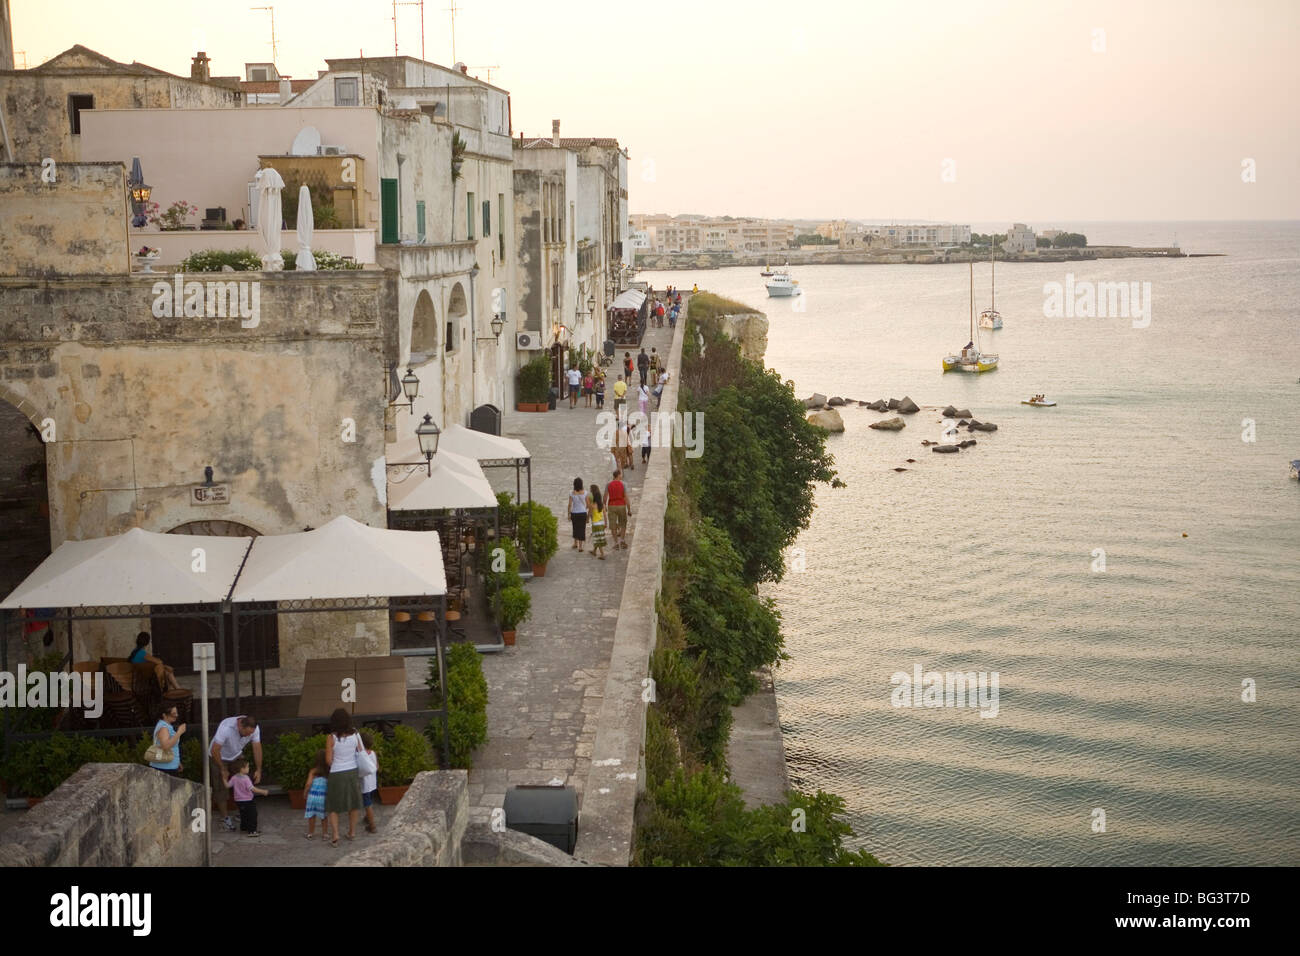 Old town, Otranto, Lecce province, Puglia, Italy, Europe Stock Photo